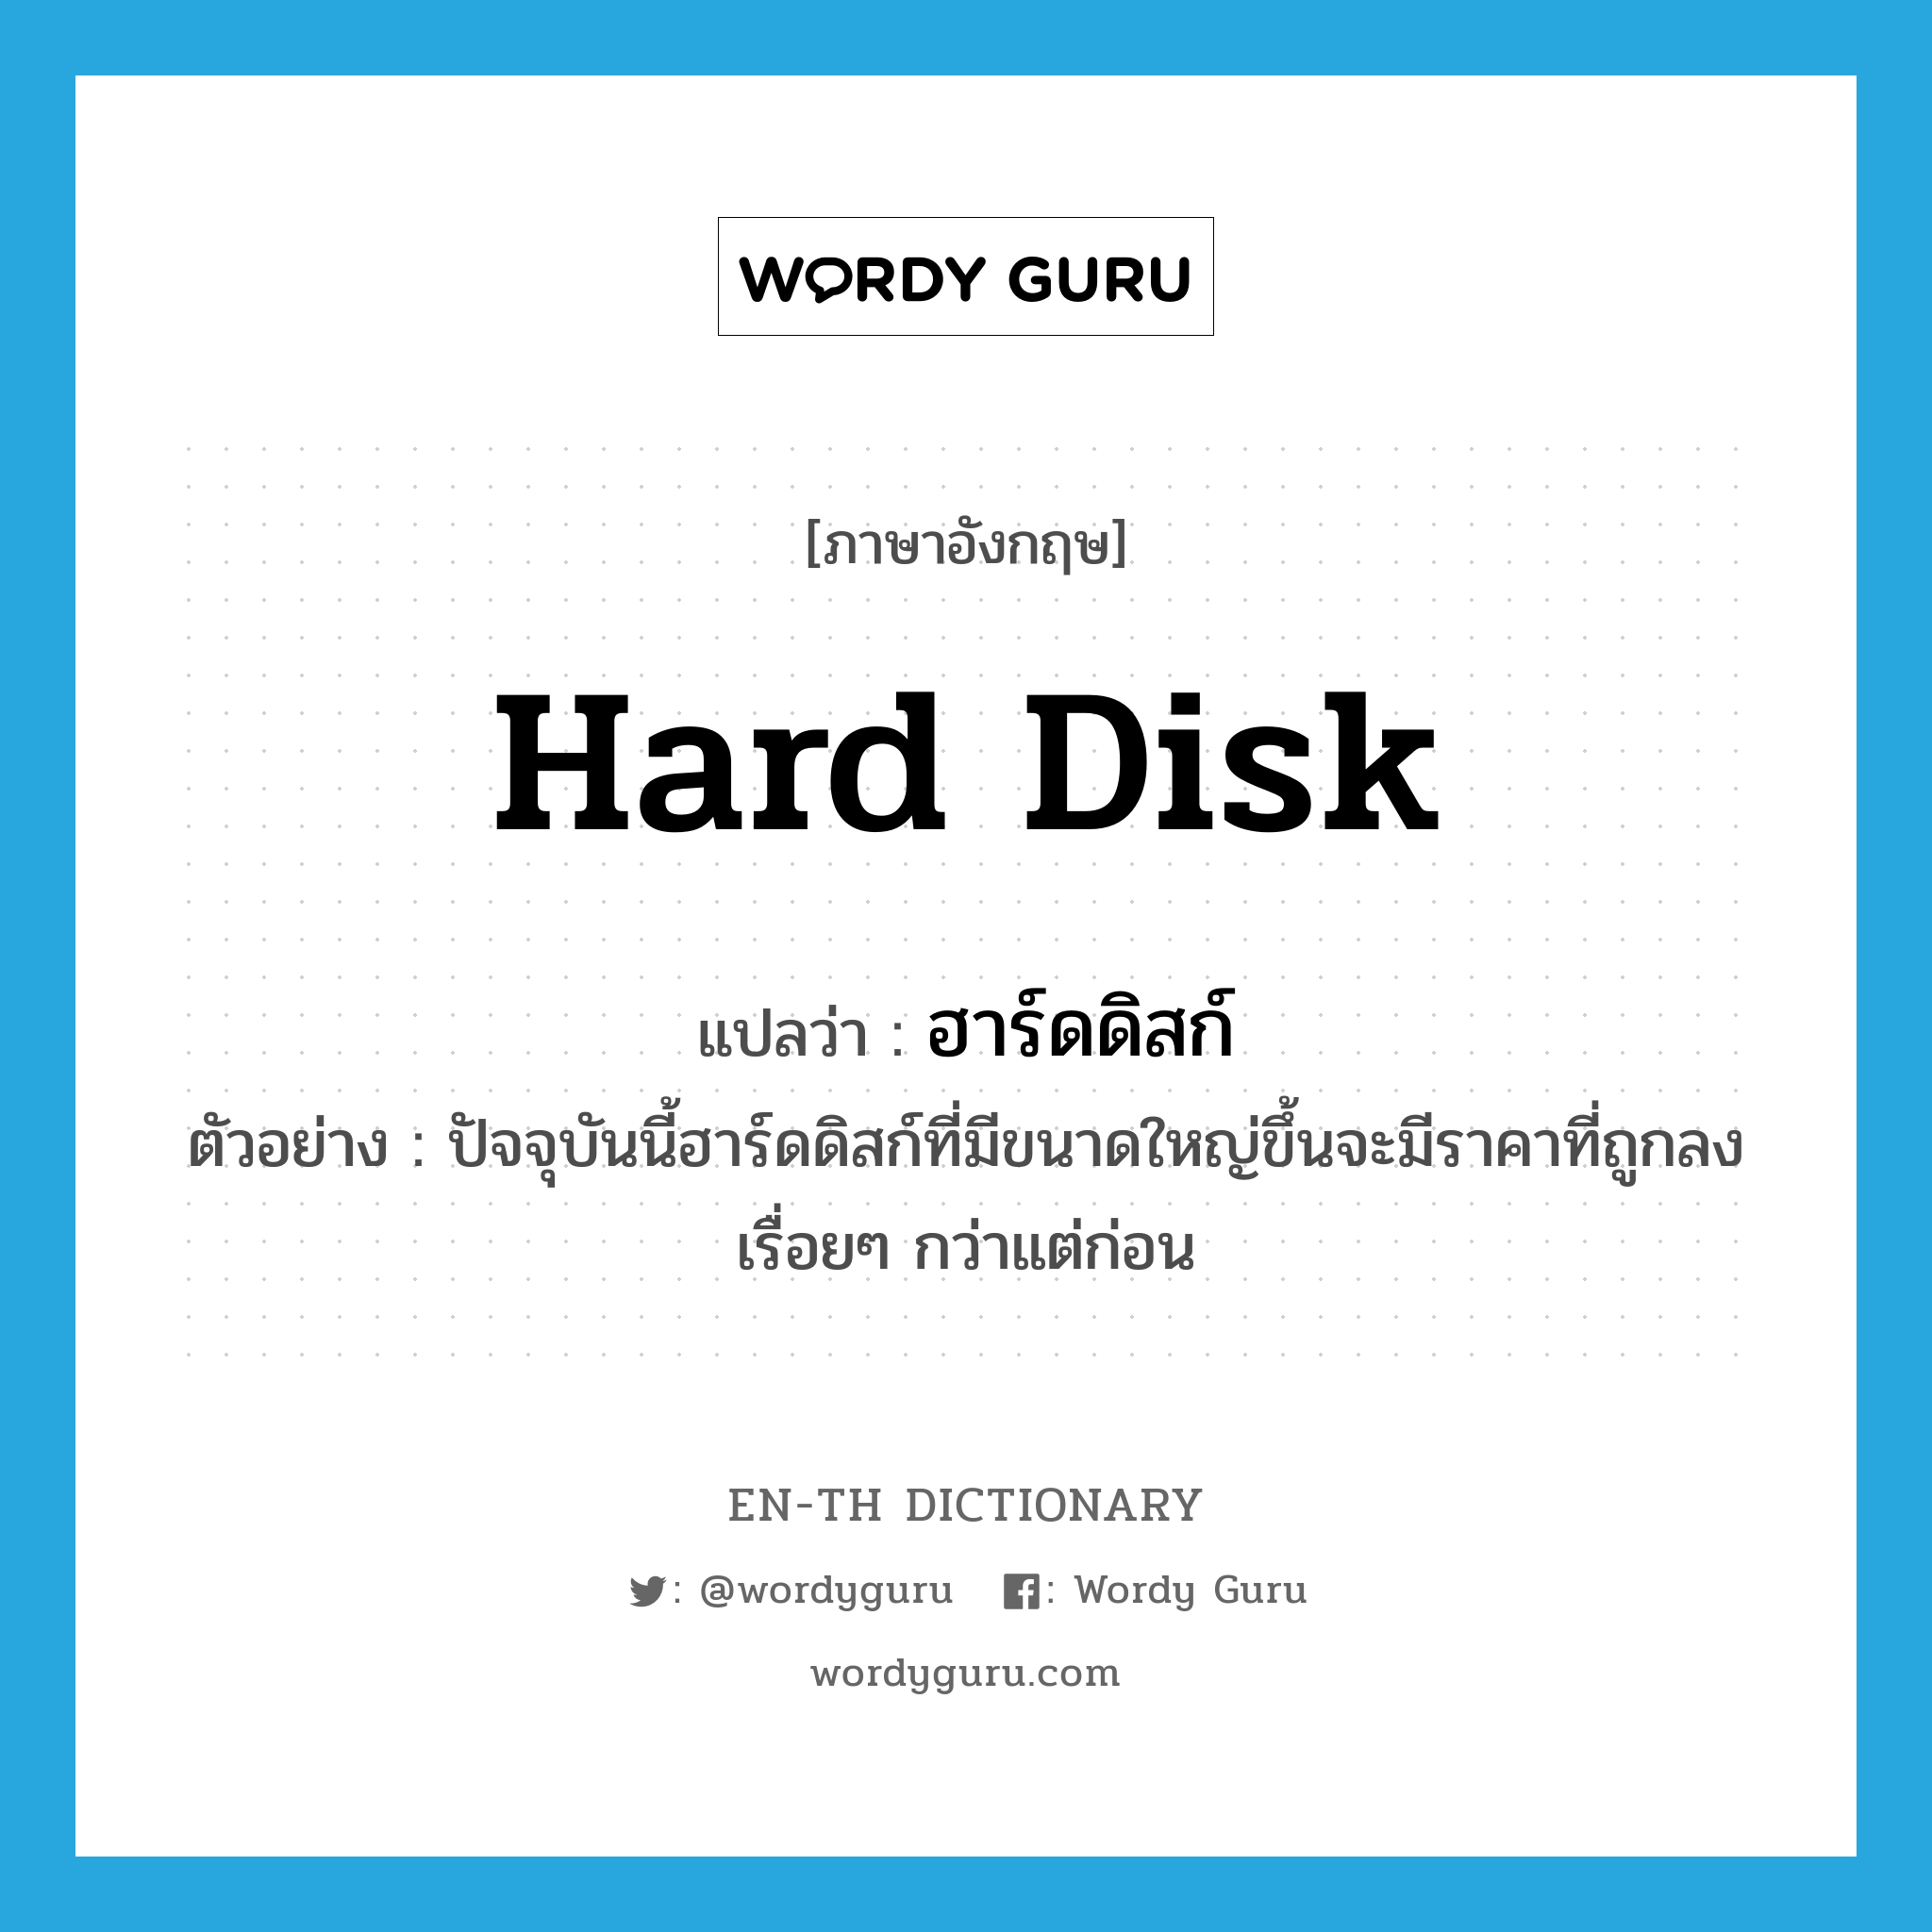 hard disk แปลว่า?, คำศัพท์ภาษาอังกฤษ hard disk แปลว่า ฮาร์ดดิสก์ ประเภท N ตัวอย่าง ปัจจุบันนี้ฮาร์ดดิสก์ที่มีขนาดใหญ่ขึ้นจะมีราคาที่ถูกลงเรื่อยๆ กว่าแต่ก่อน หมวด N